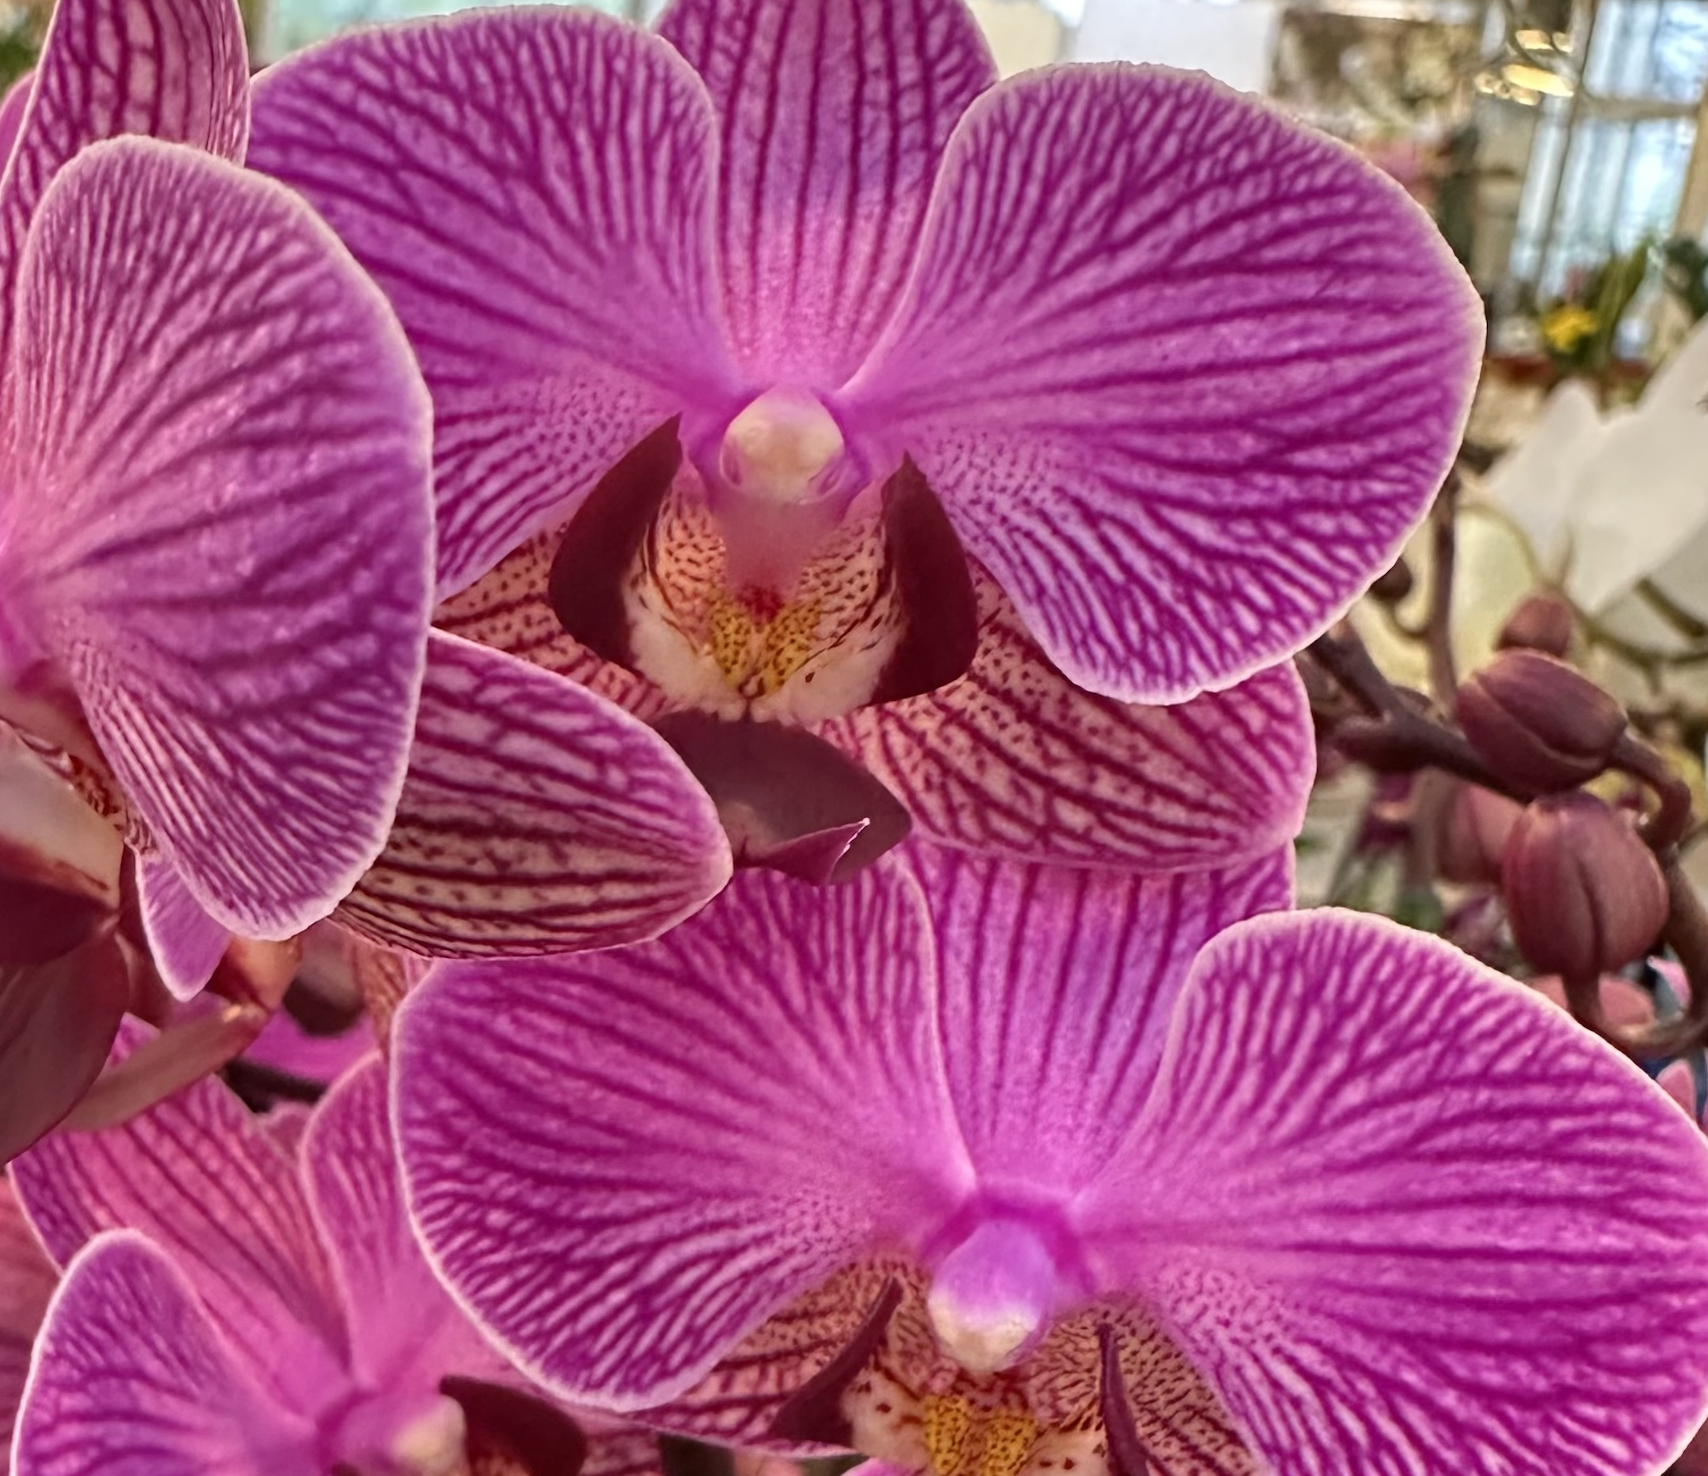 Dal 3 febbraio, Festival delle Orchidee!